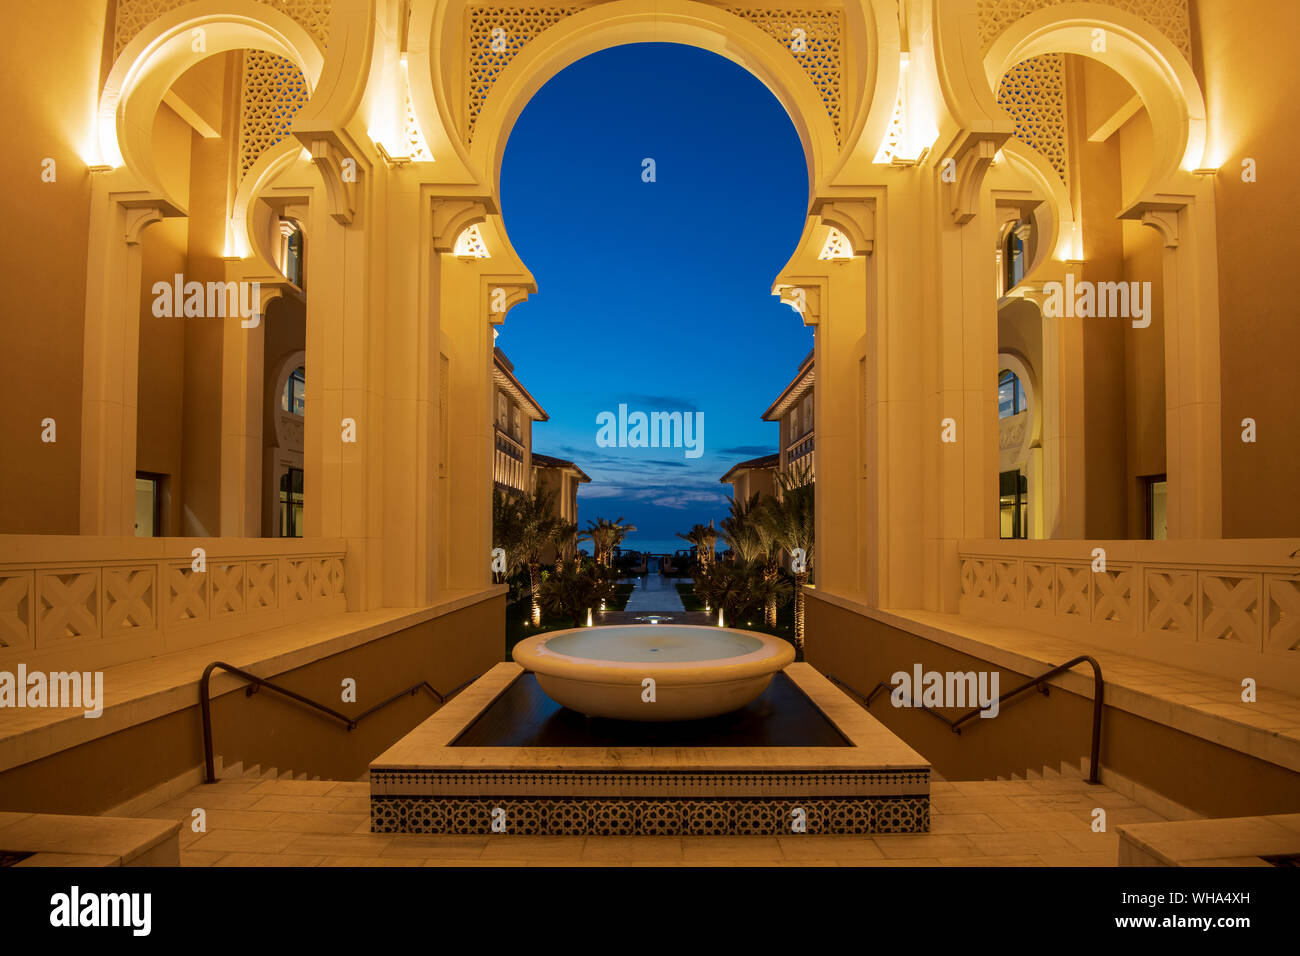 L'architecture arabe dans la nuit, l'île de Saadiyat, Abu Dhabi, Émirats arabes unis, au Moyen-Orient. Banque D'Images